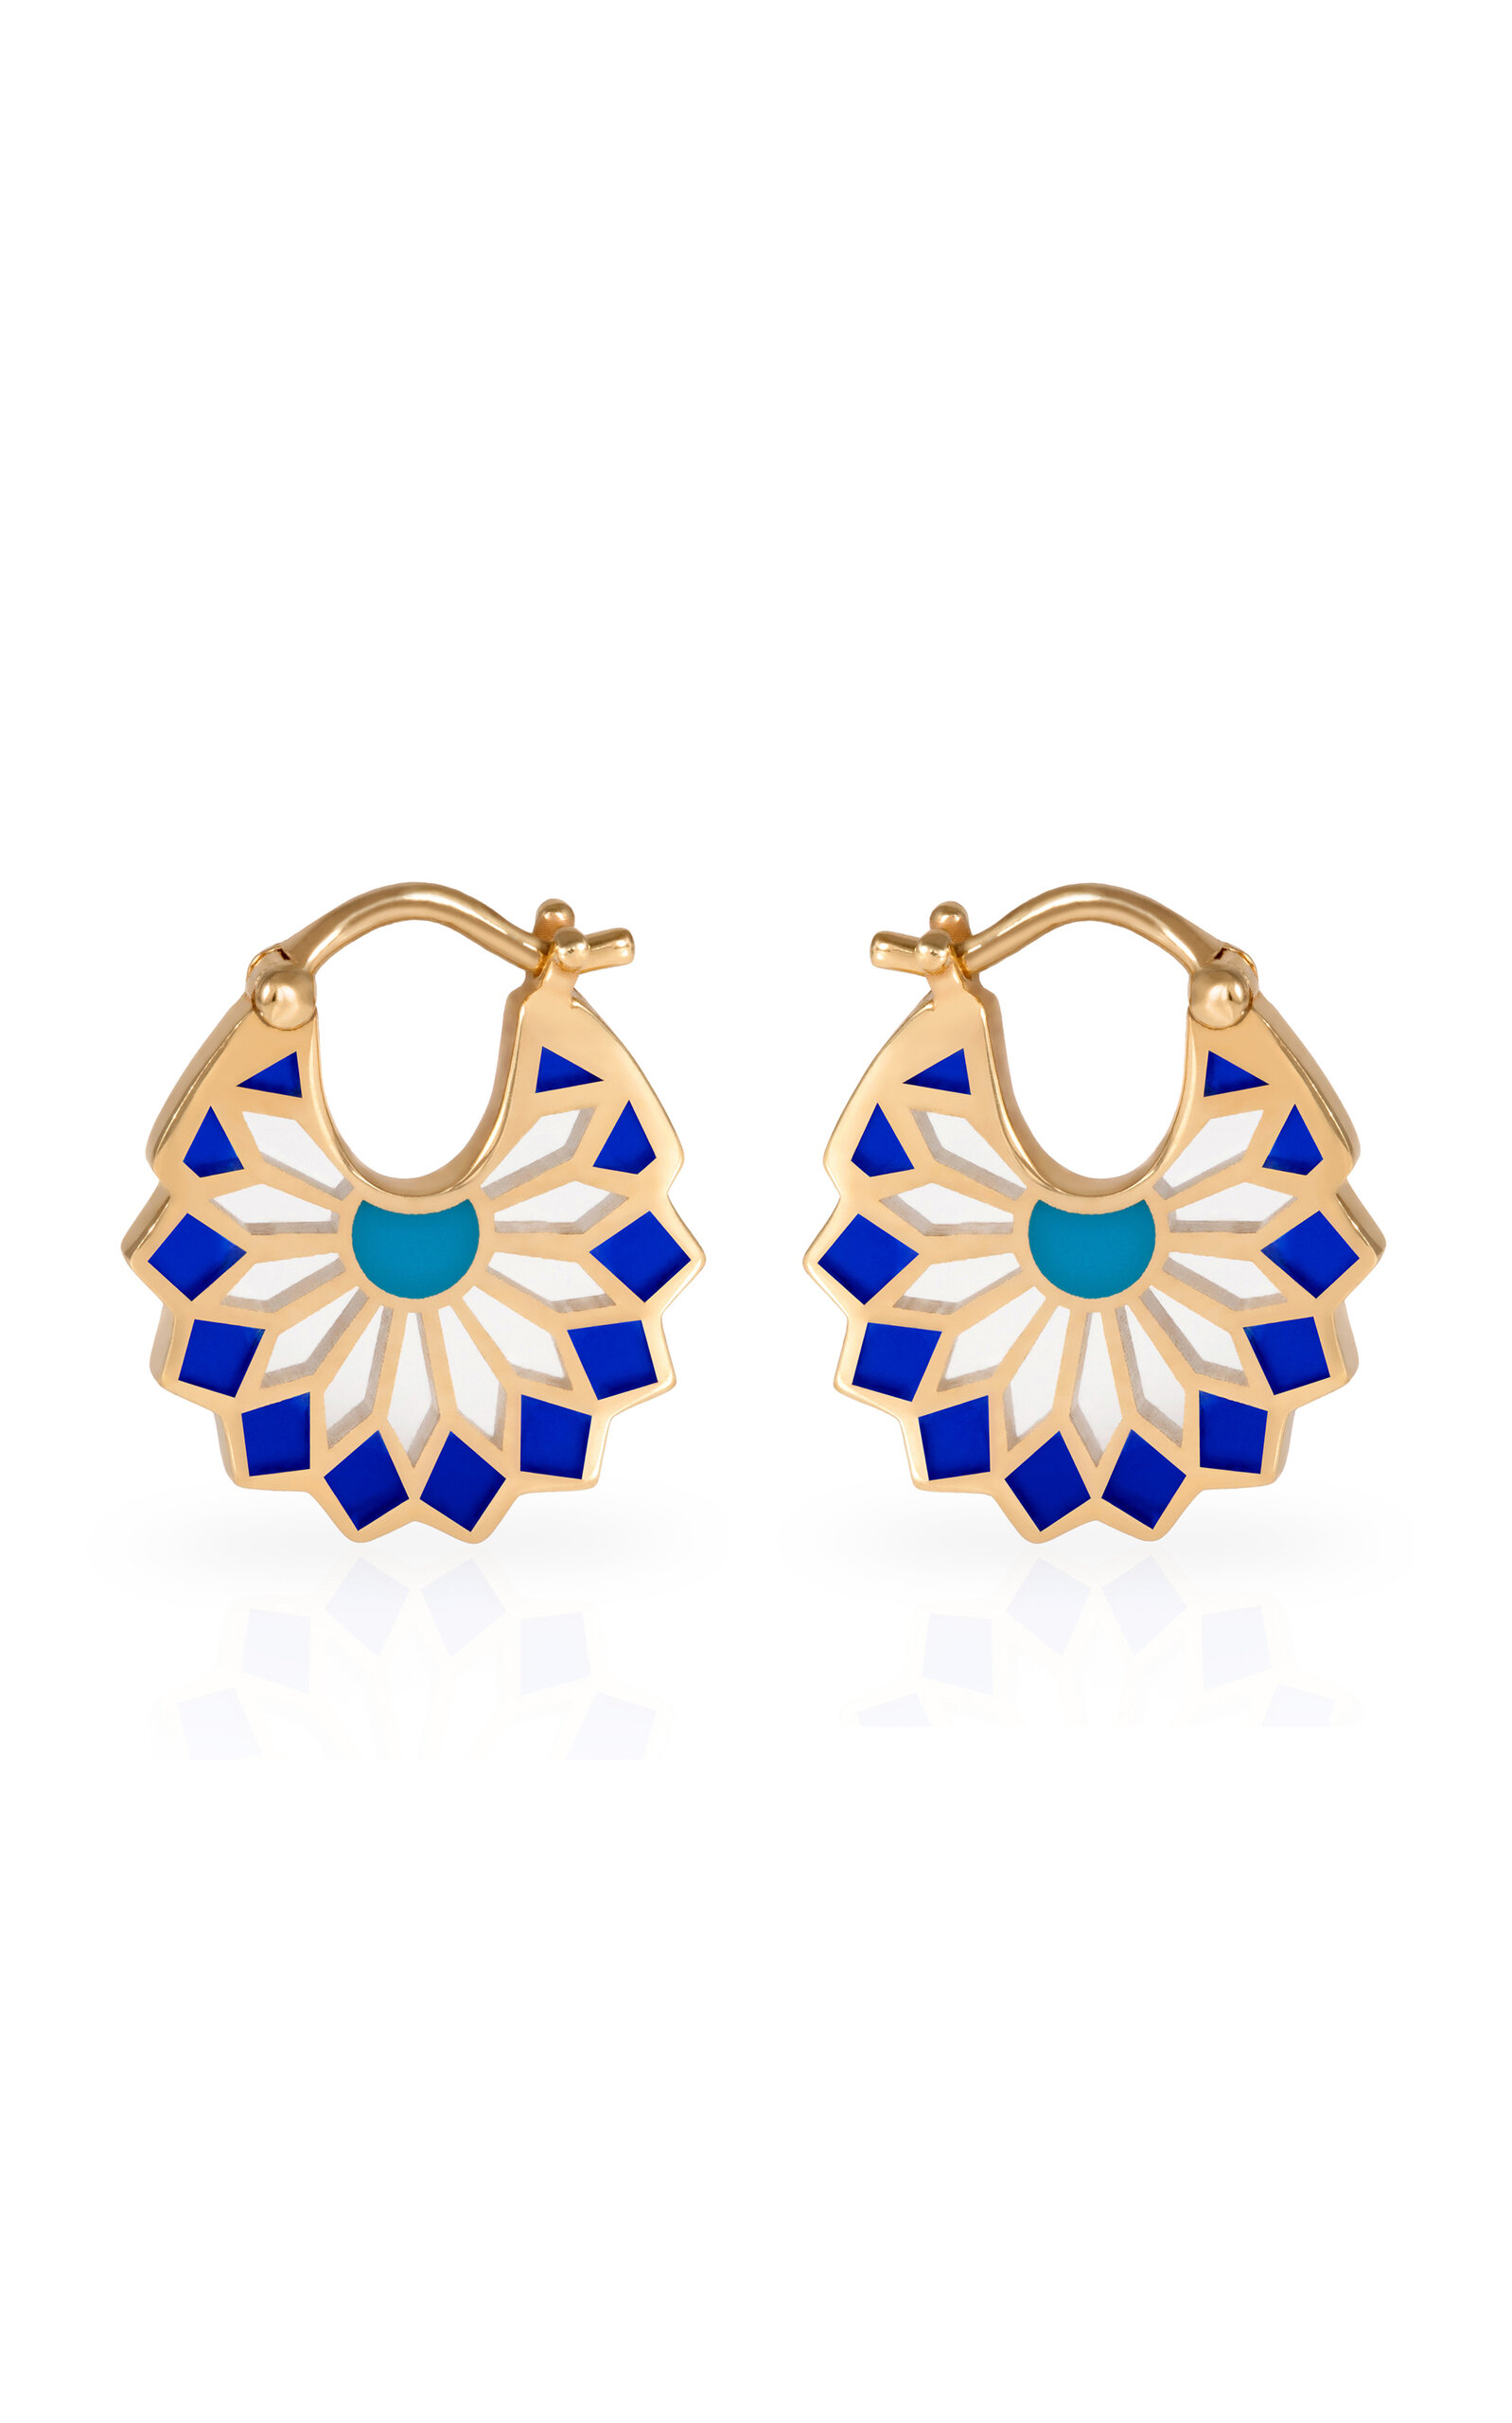 L'atelier Nawbar Sursok Enameled 18k Yellow Gold Earrings In Blue